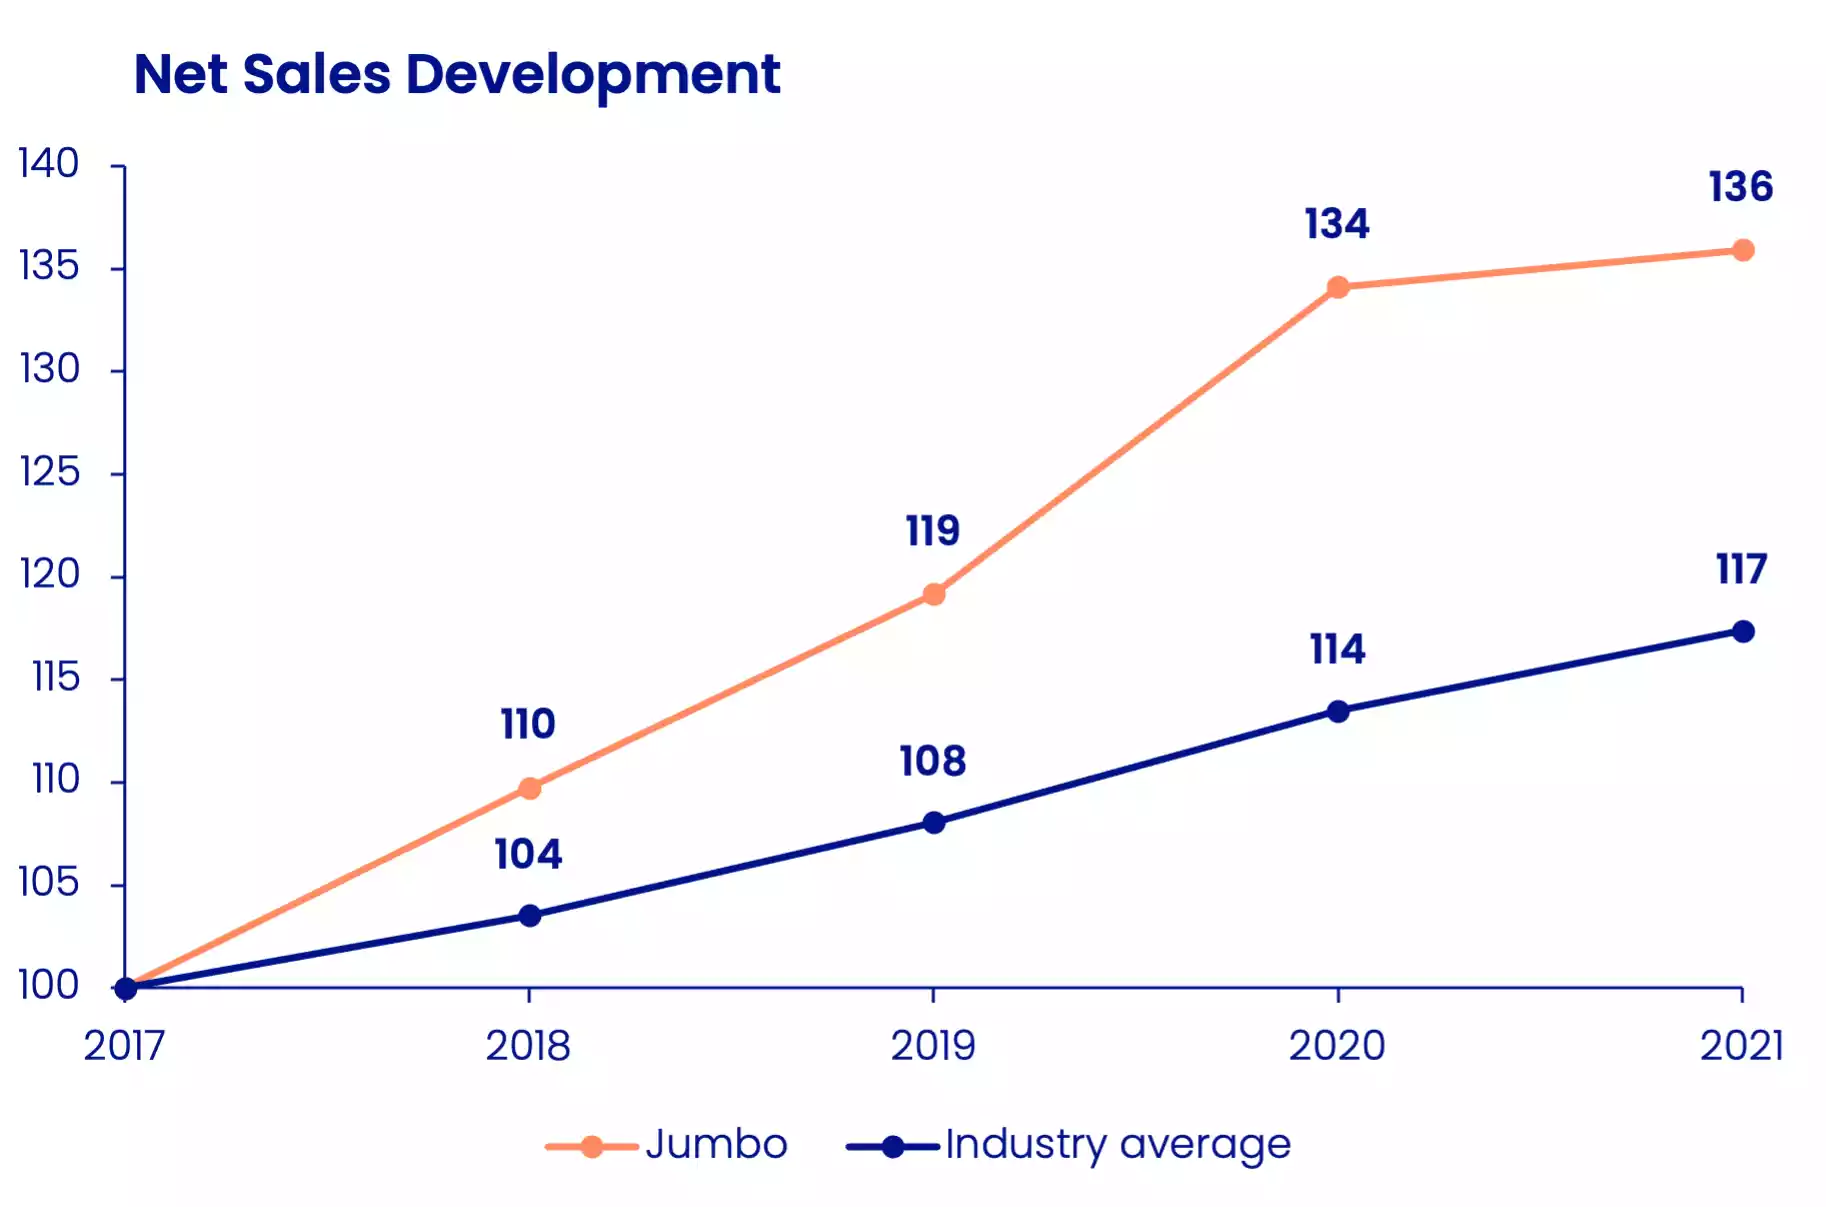 Net Sales Development Jumbo versus Industry Average